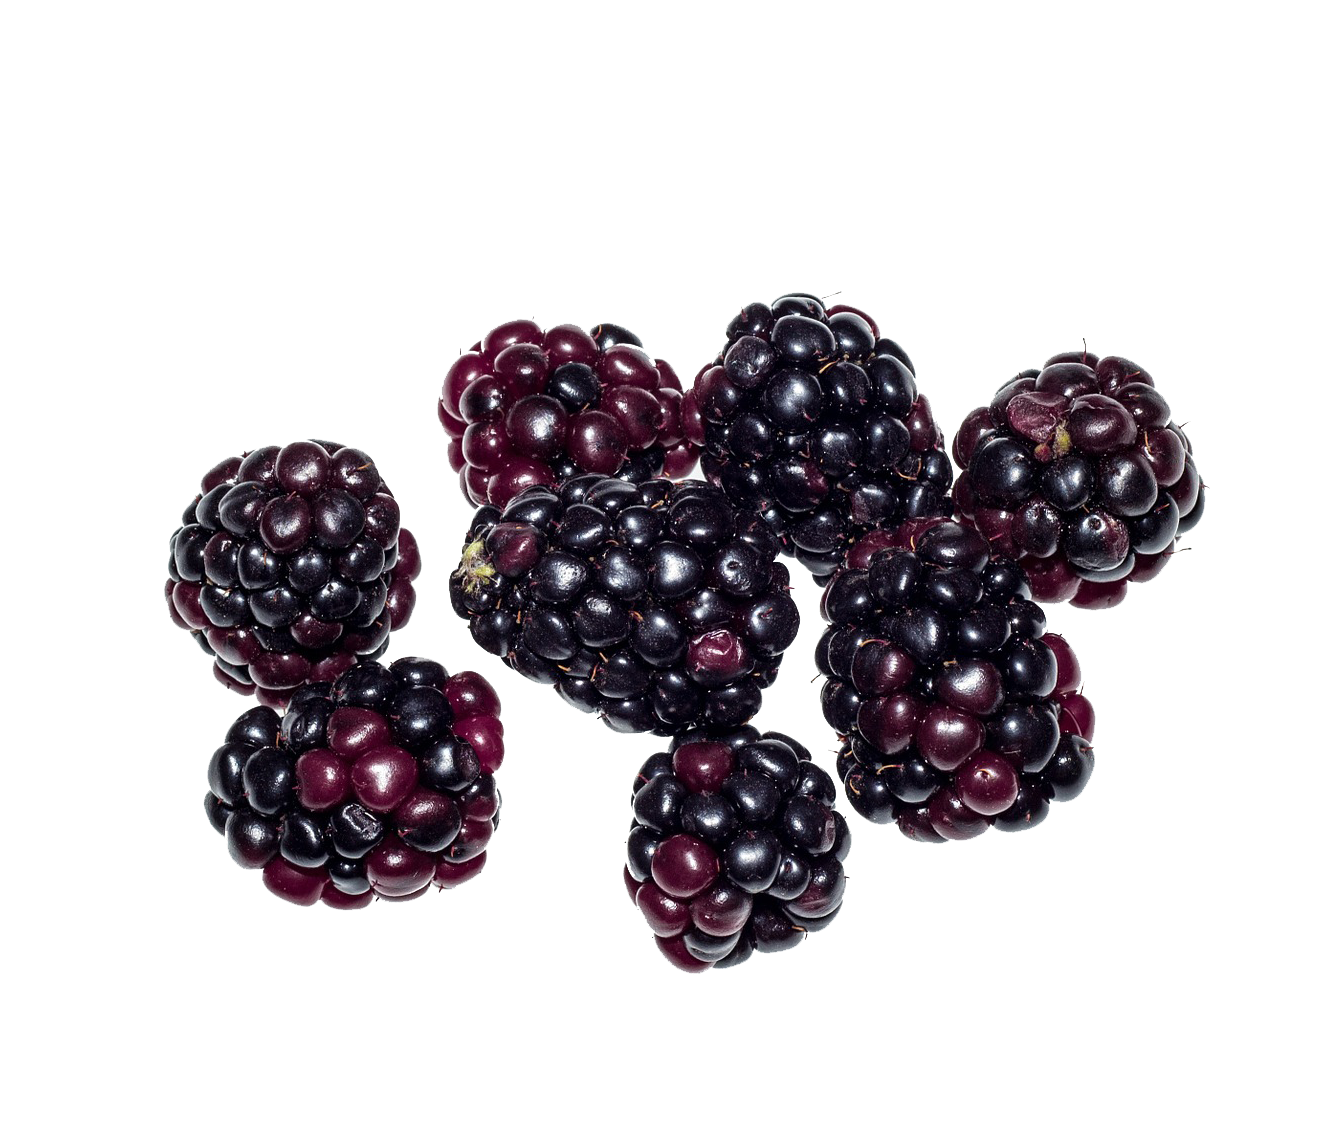 Blackberry Fruit PNG in Transparent pngteam.com